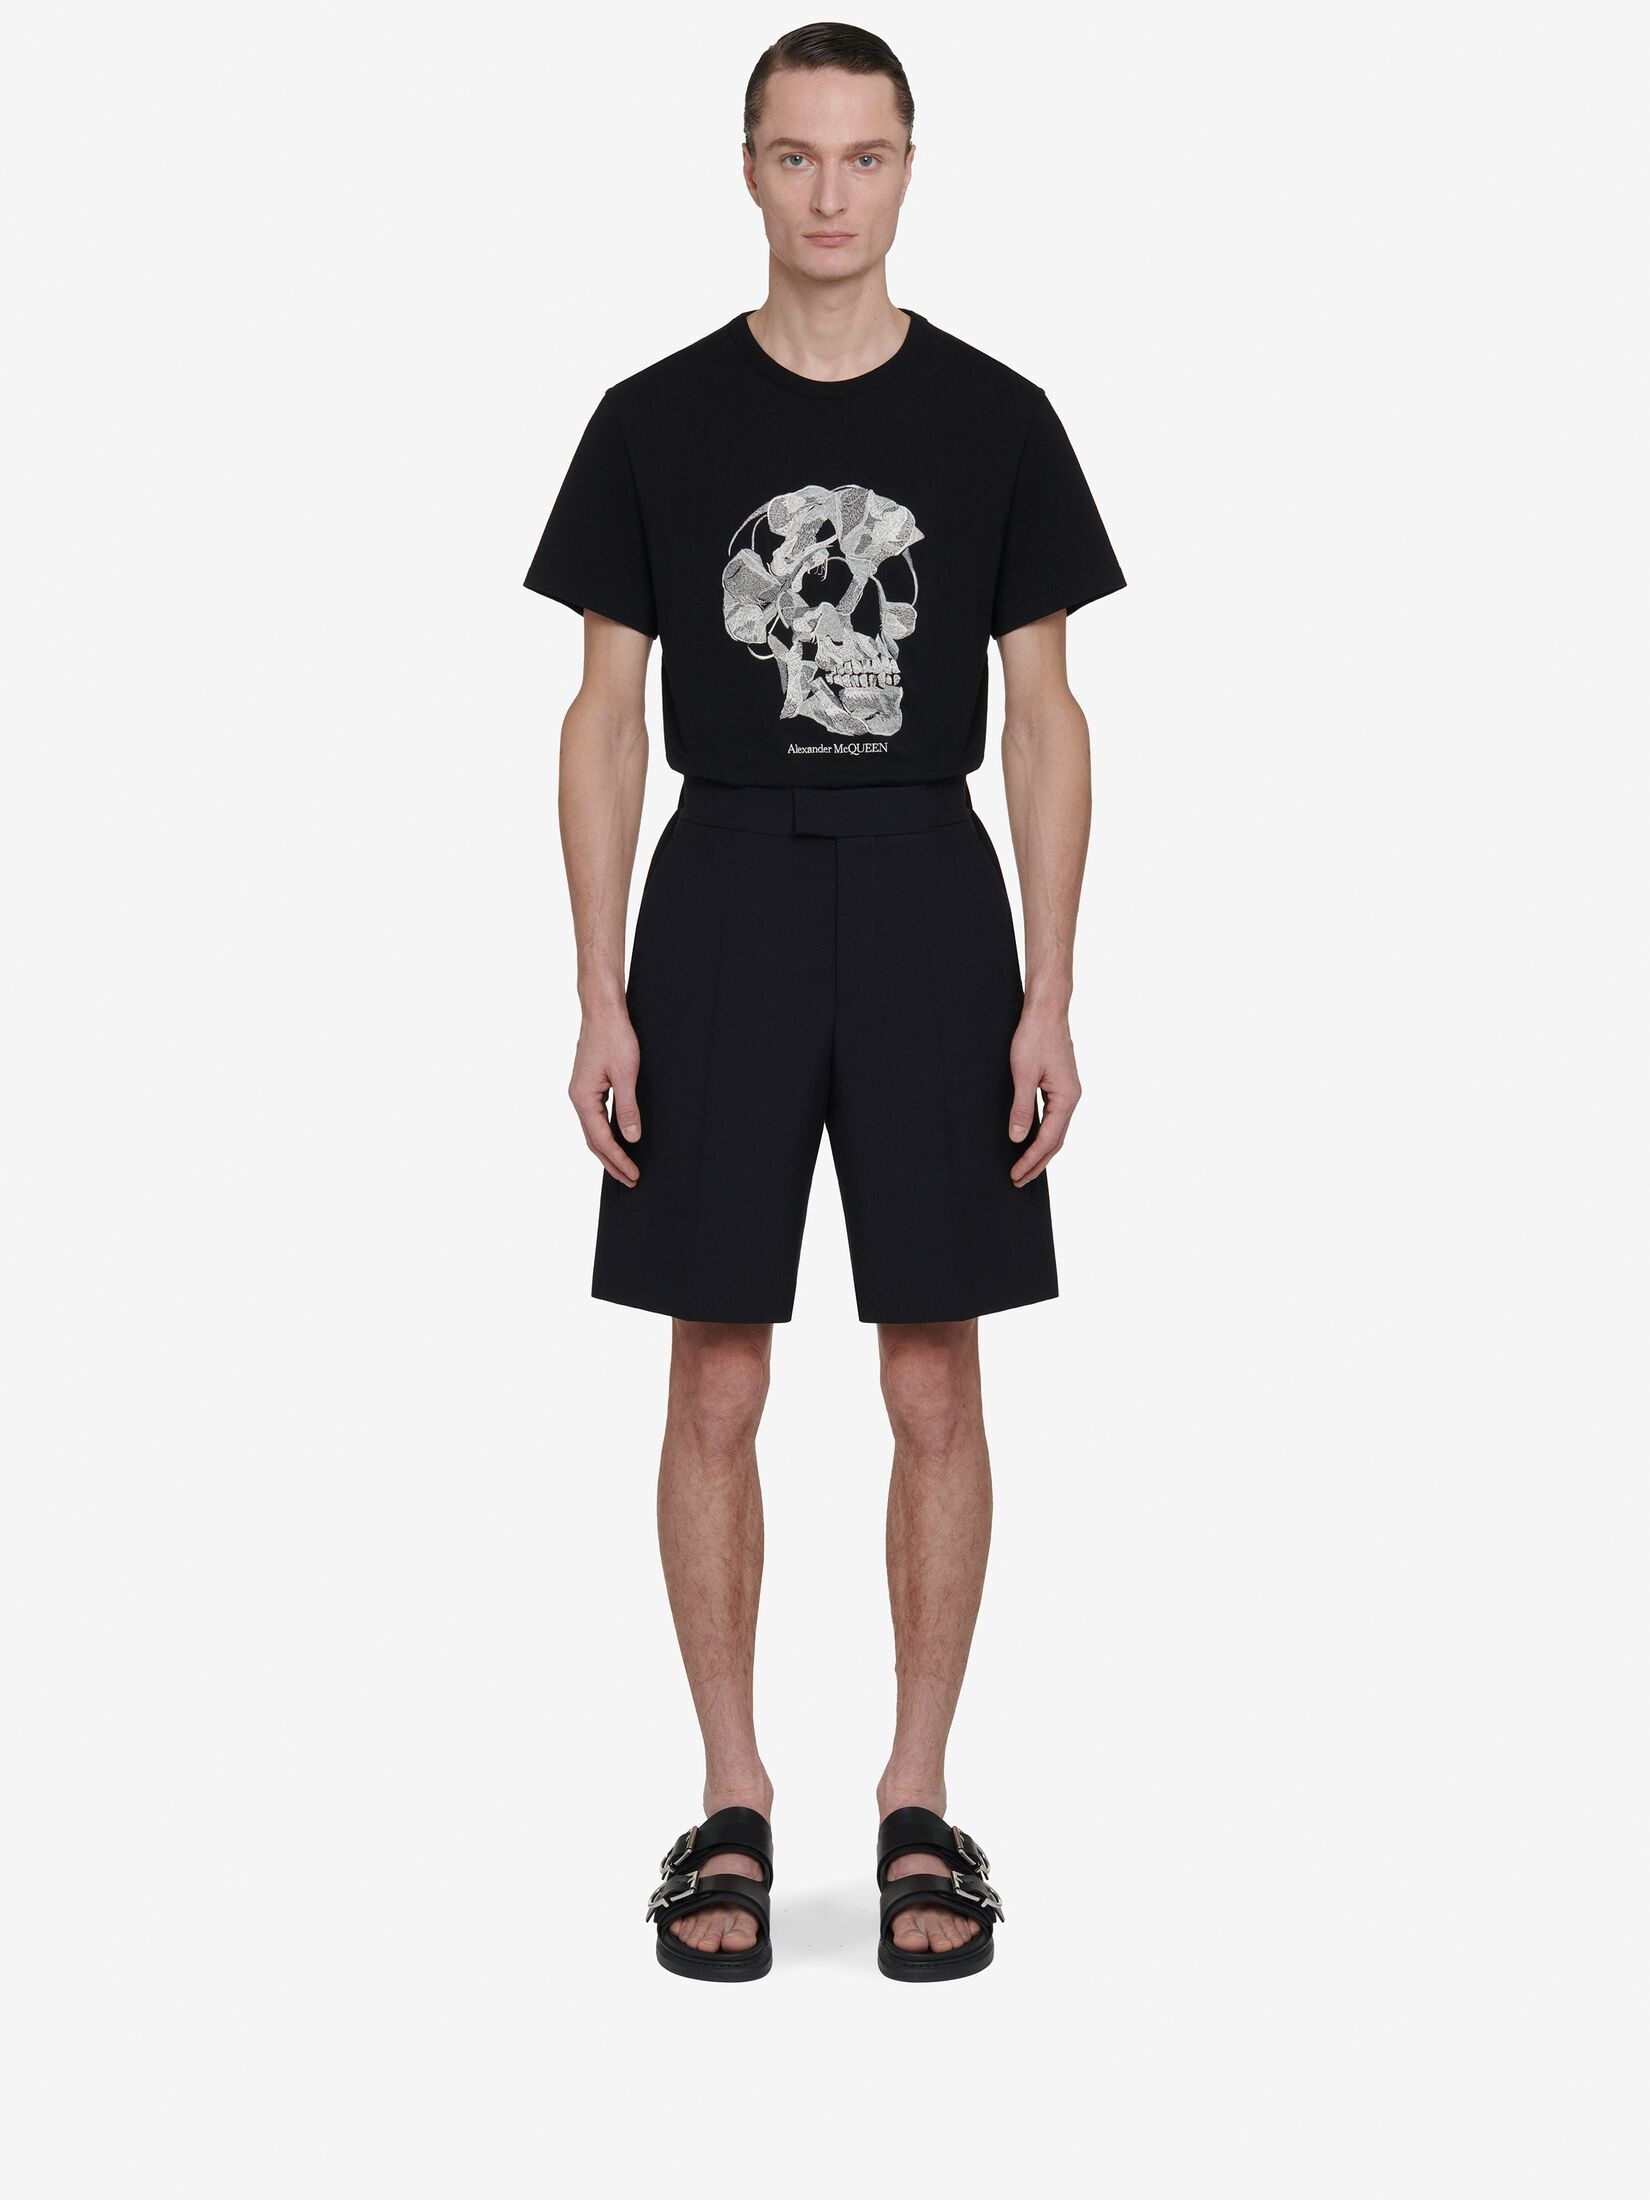 Men's Pressed Flower Skull T-shirt in Black - 2